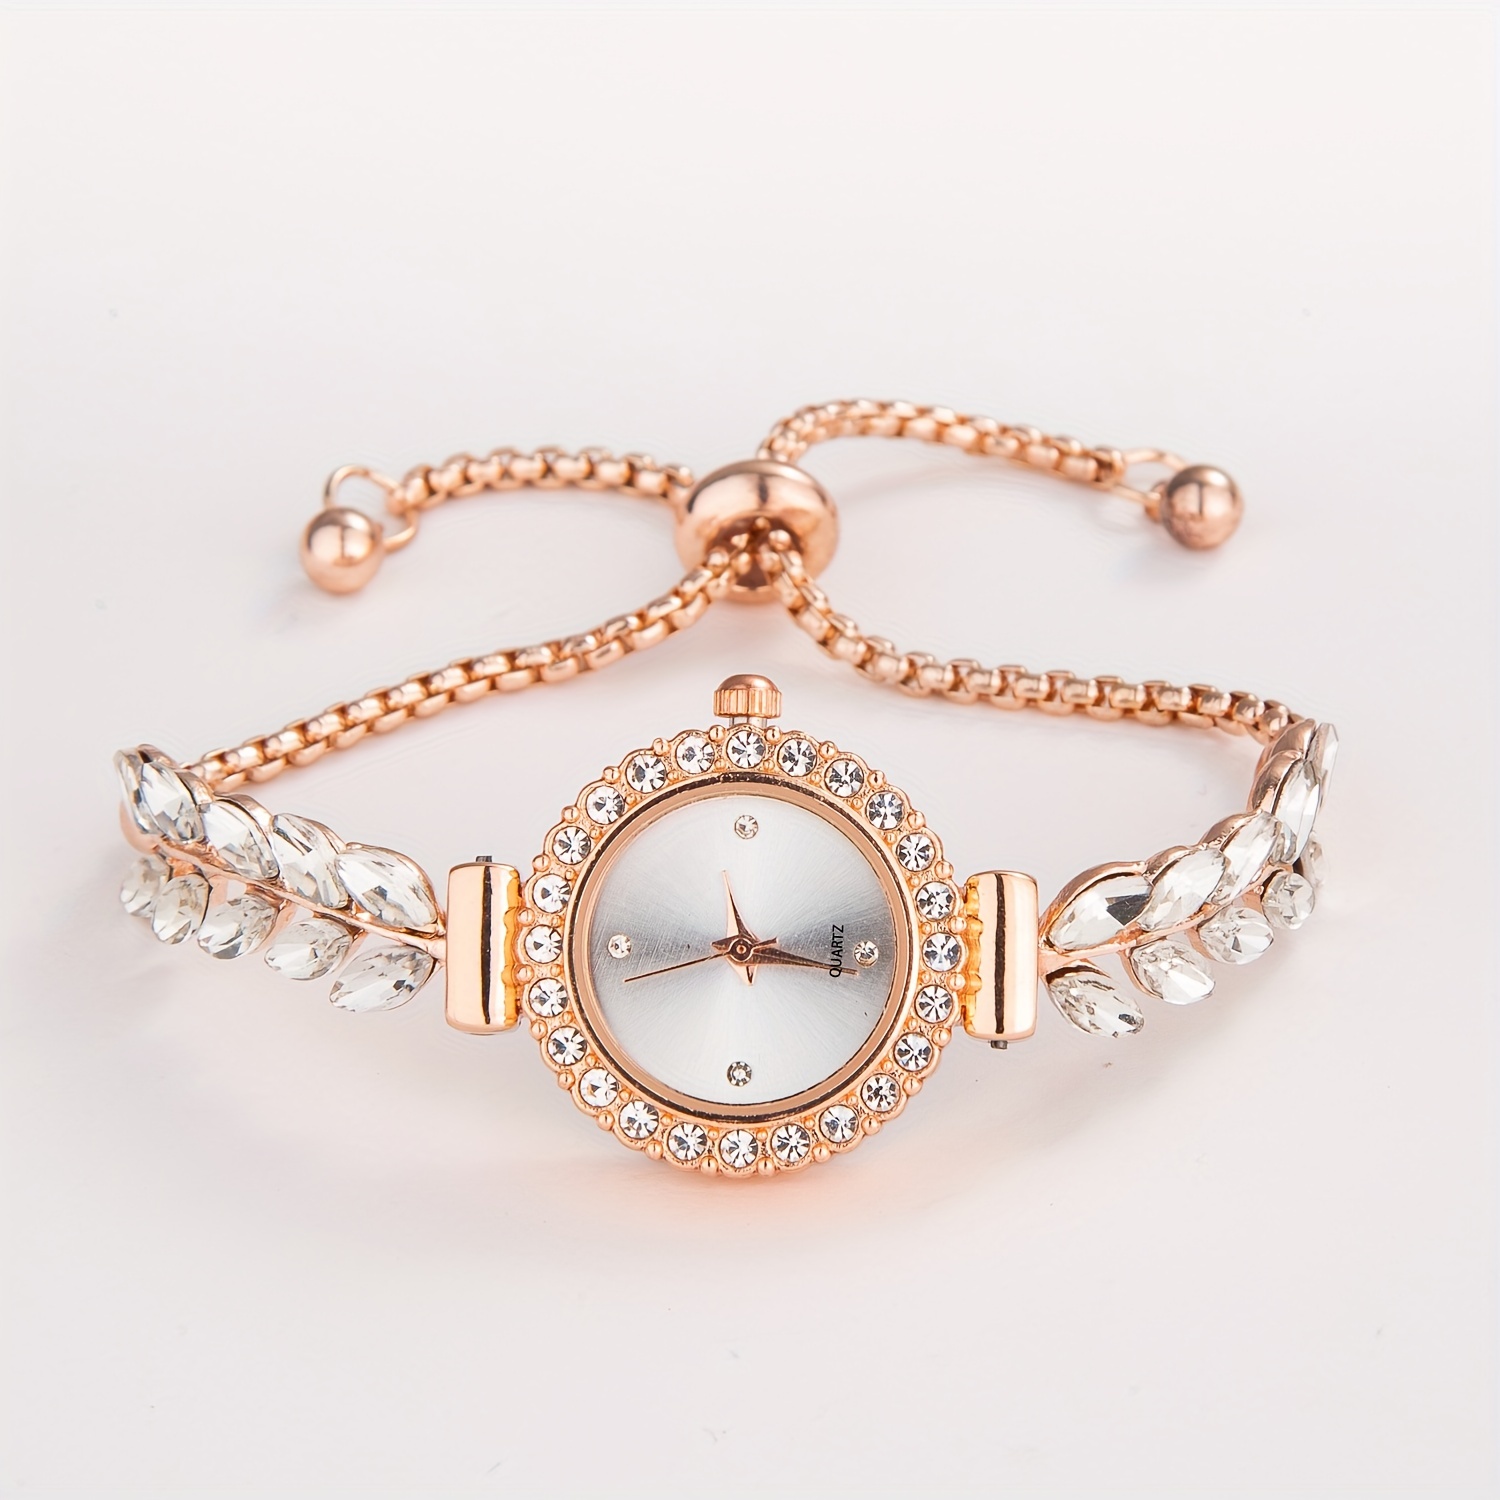 Montre femme digitale or rose écran diamant relief bracelet or love noeud